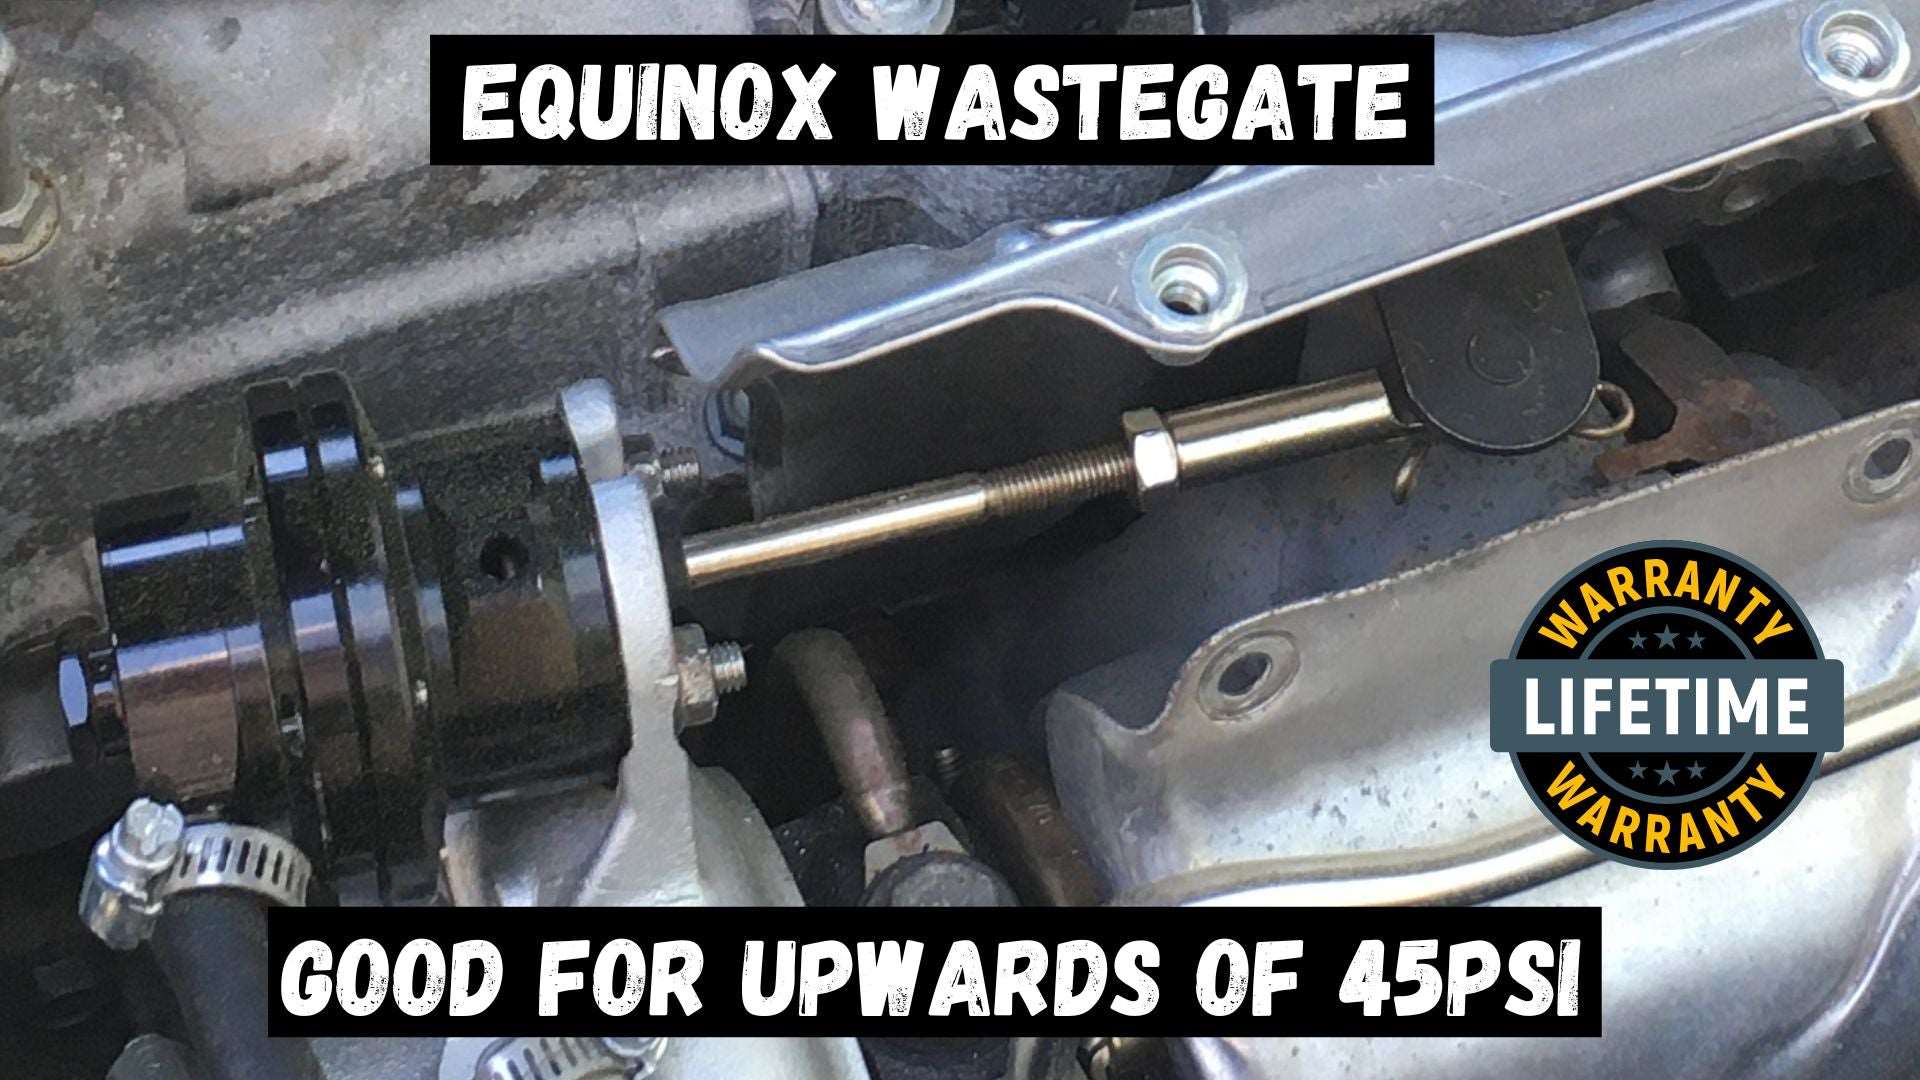 Equinox 1.5 wastegate